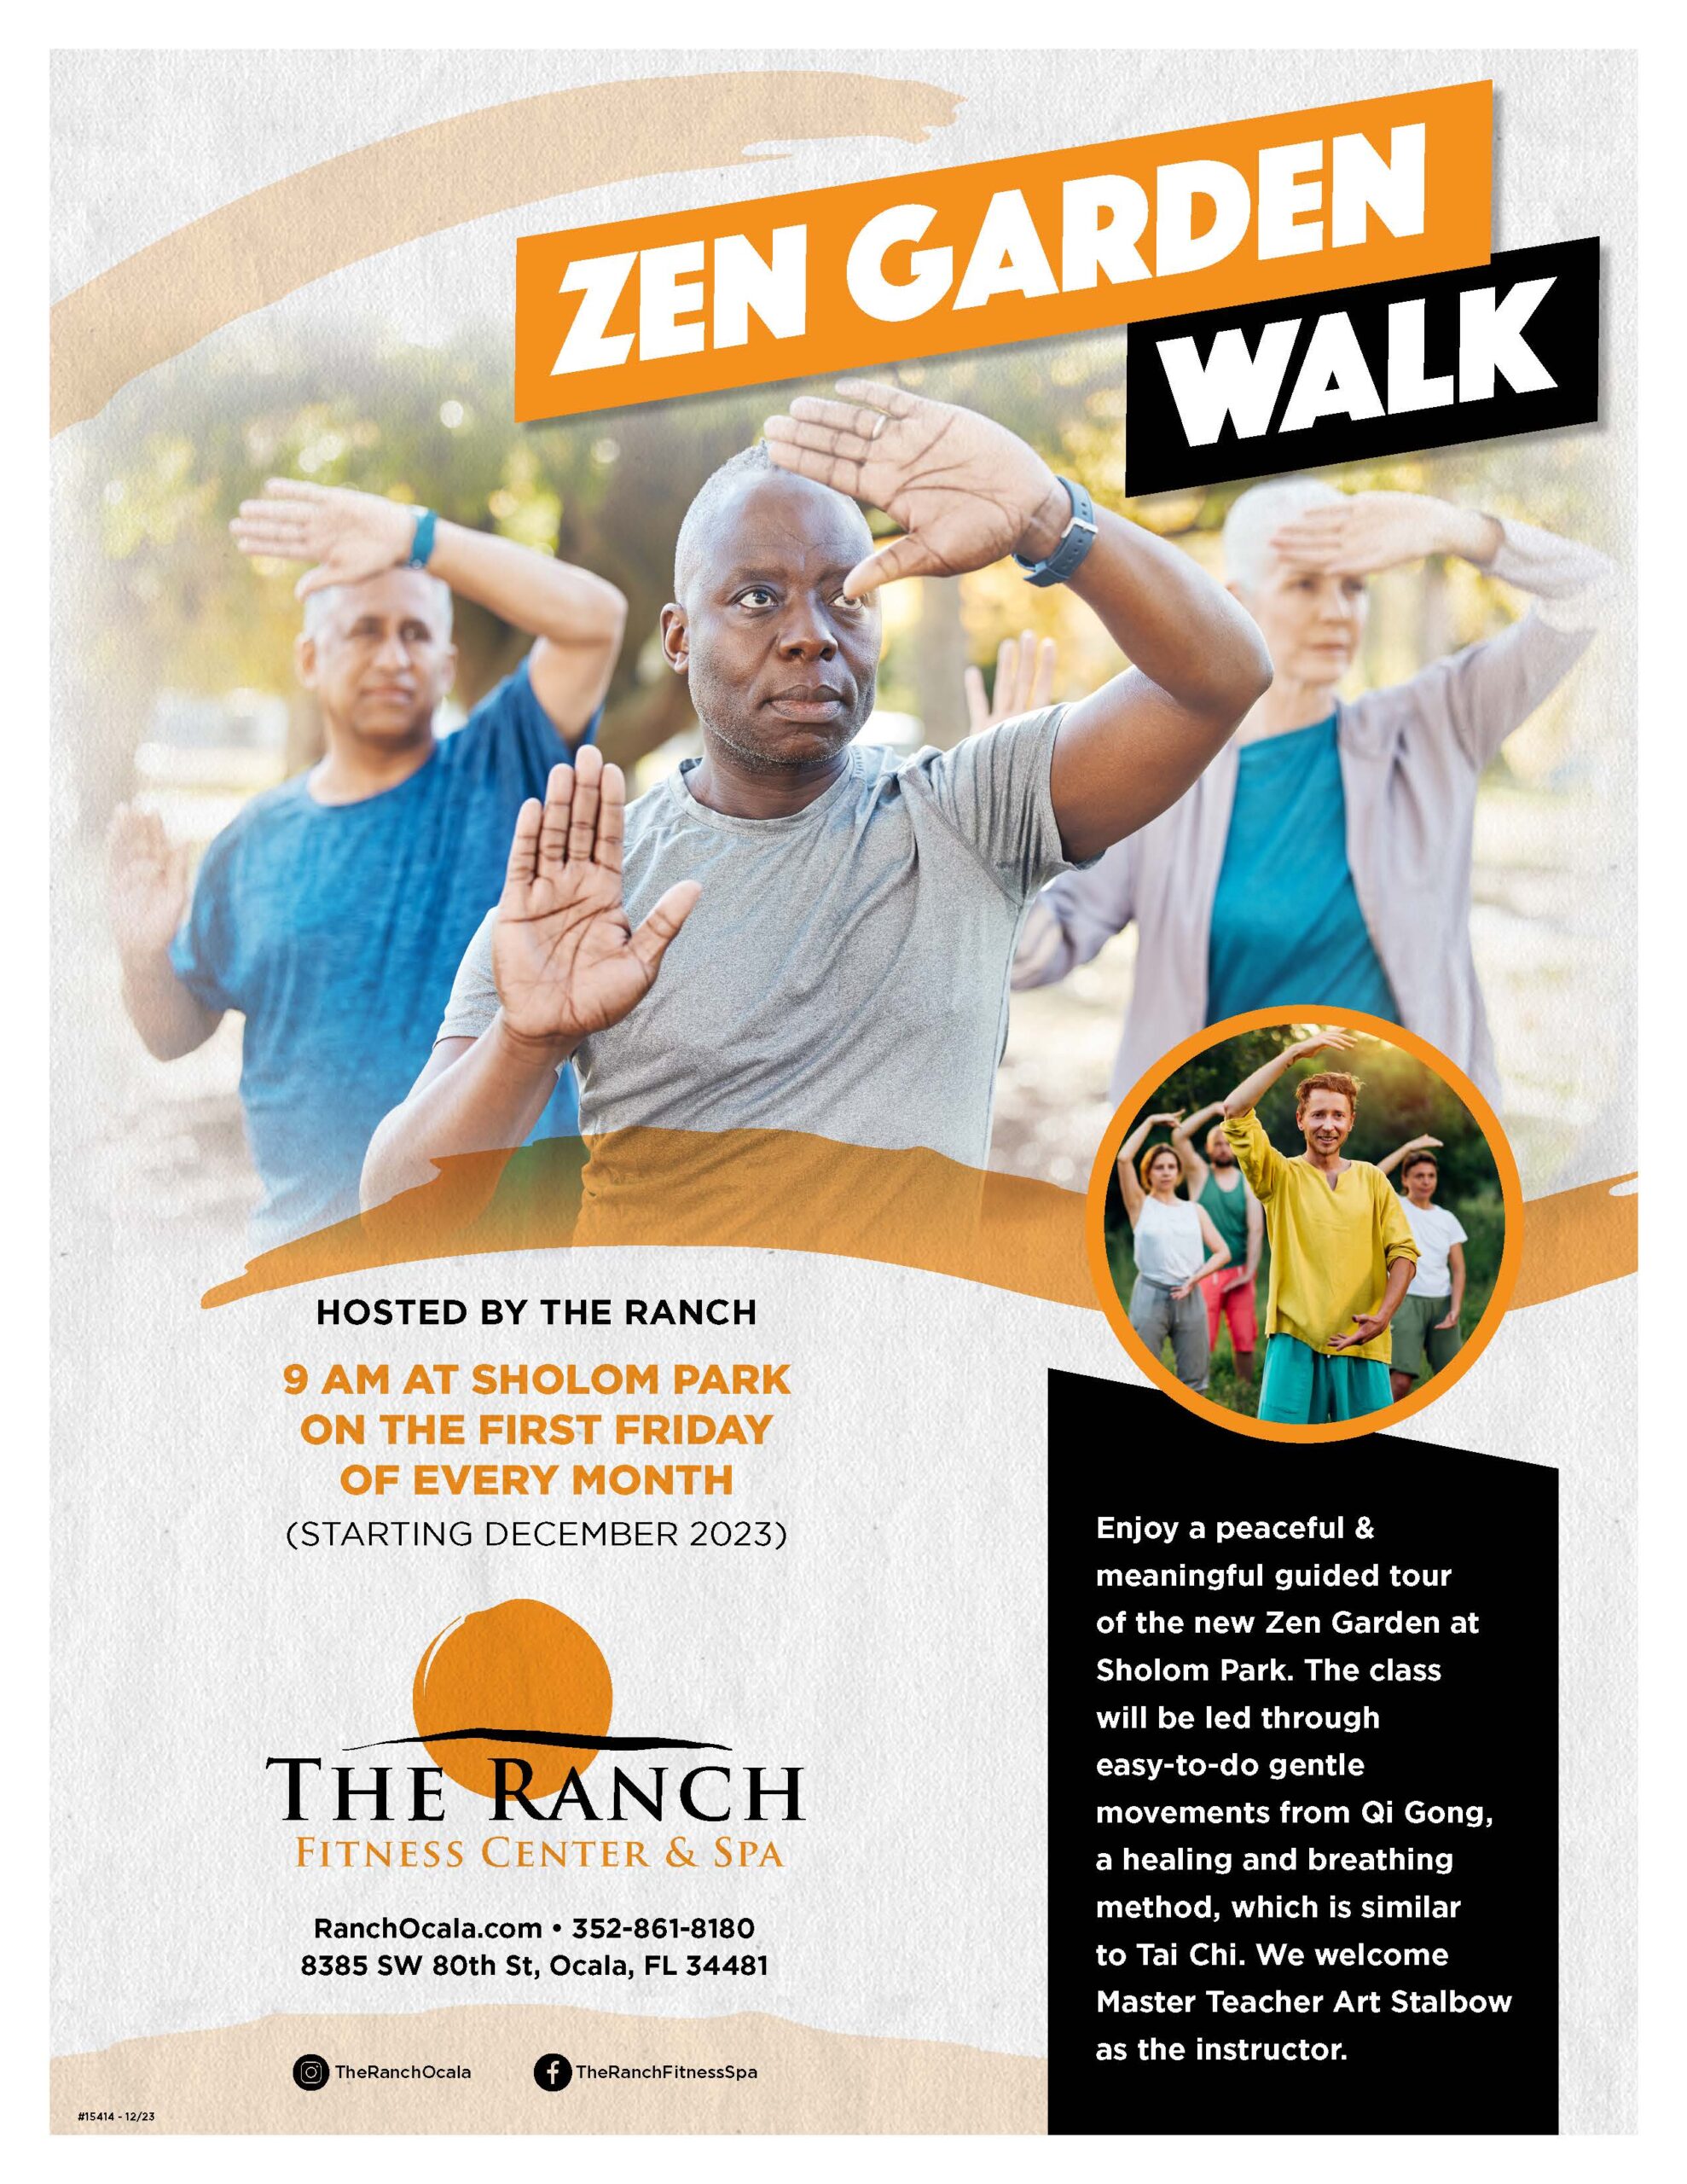 Zen Garden Walk. The Ranch fitness class at Sholom Park.